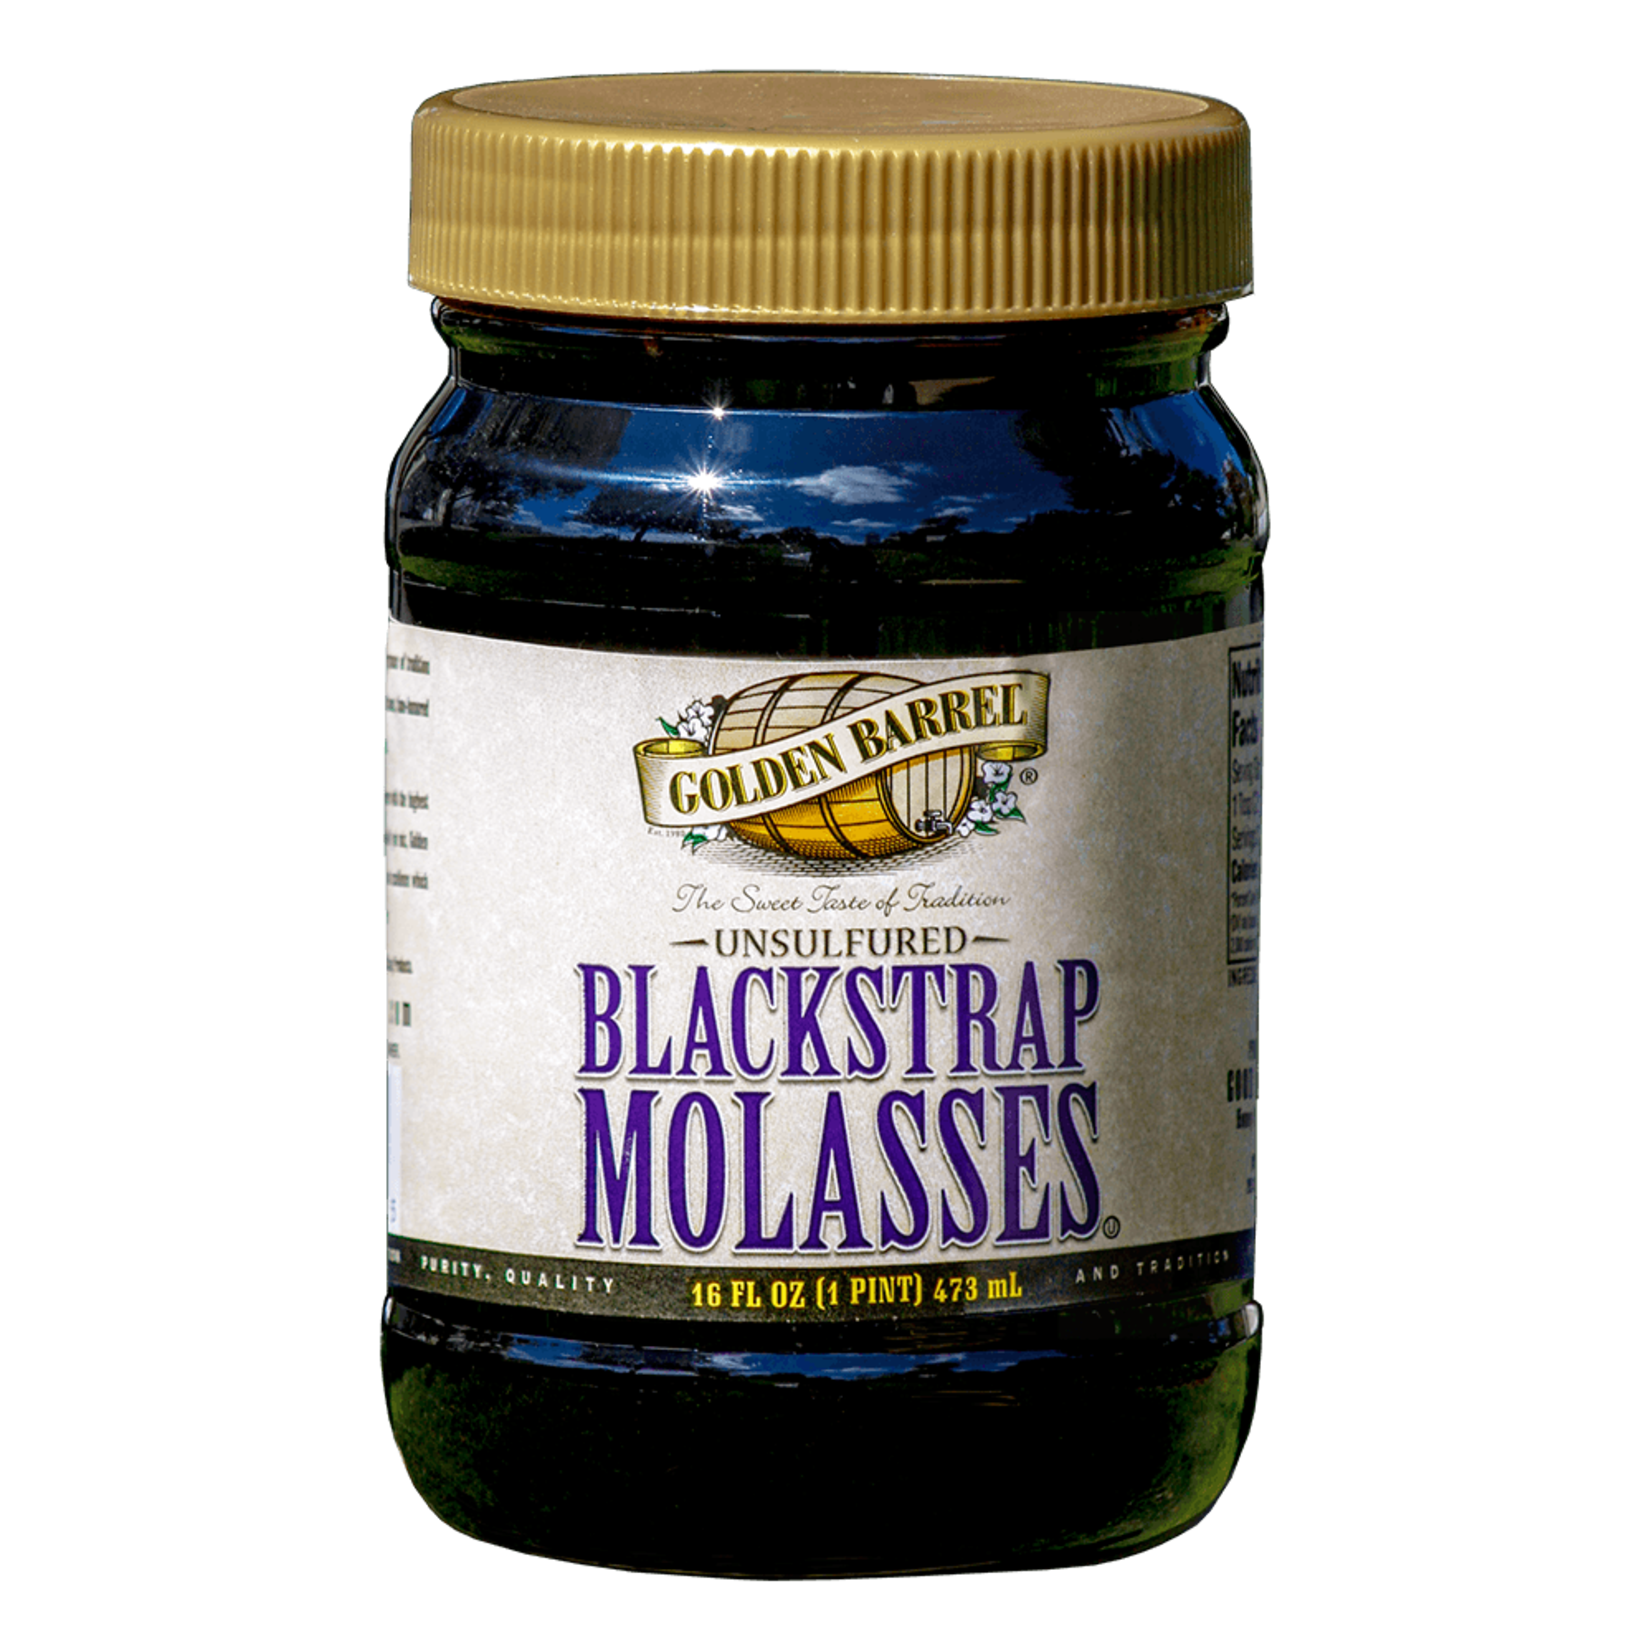 Golden Barrel 1 Qt. Sulfur-Free Blackstrap Molasses